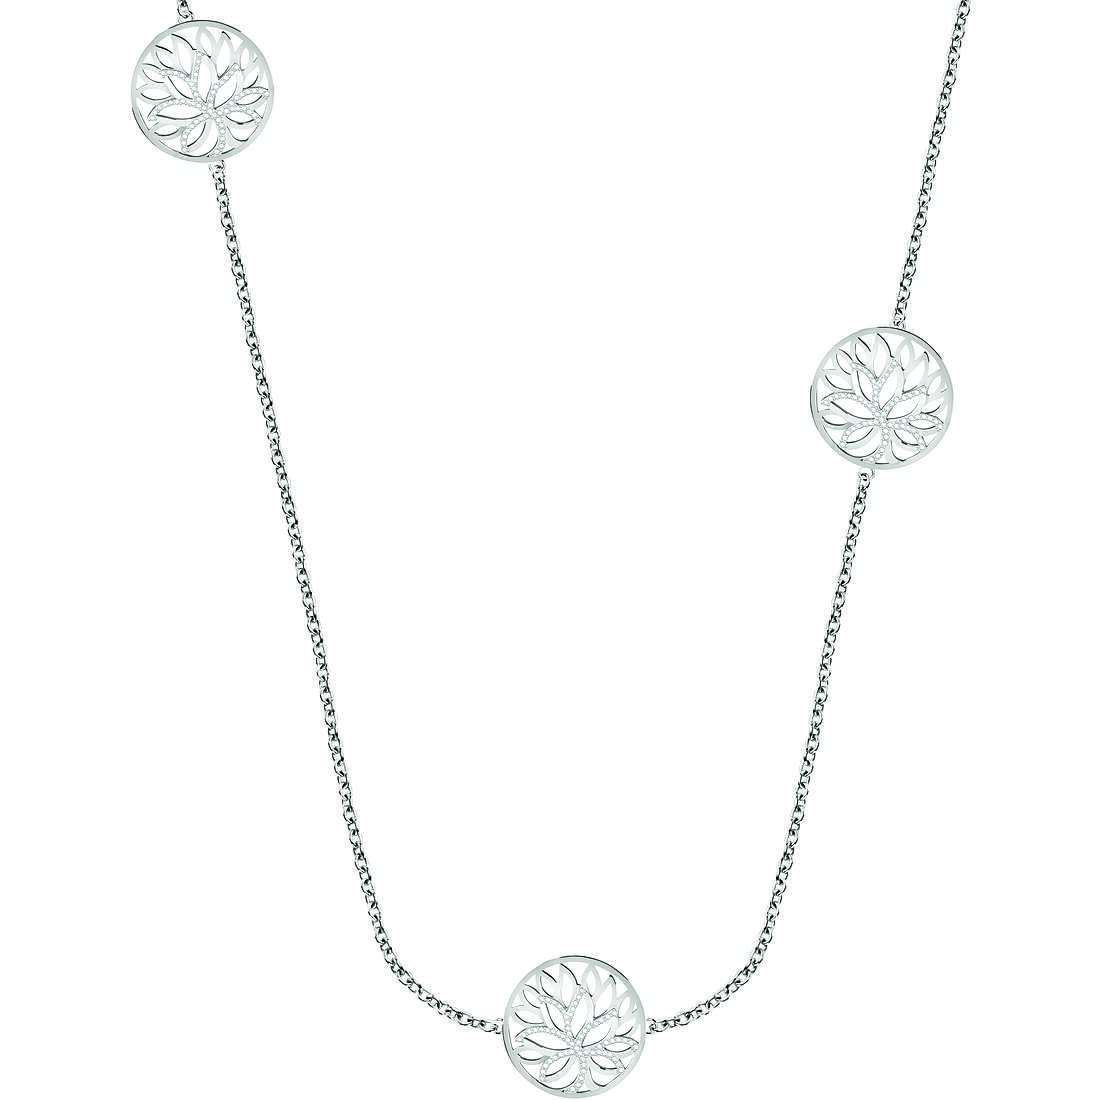 necklace woman jewellery Morellato Loto SATD02